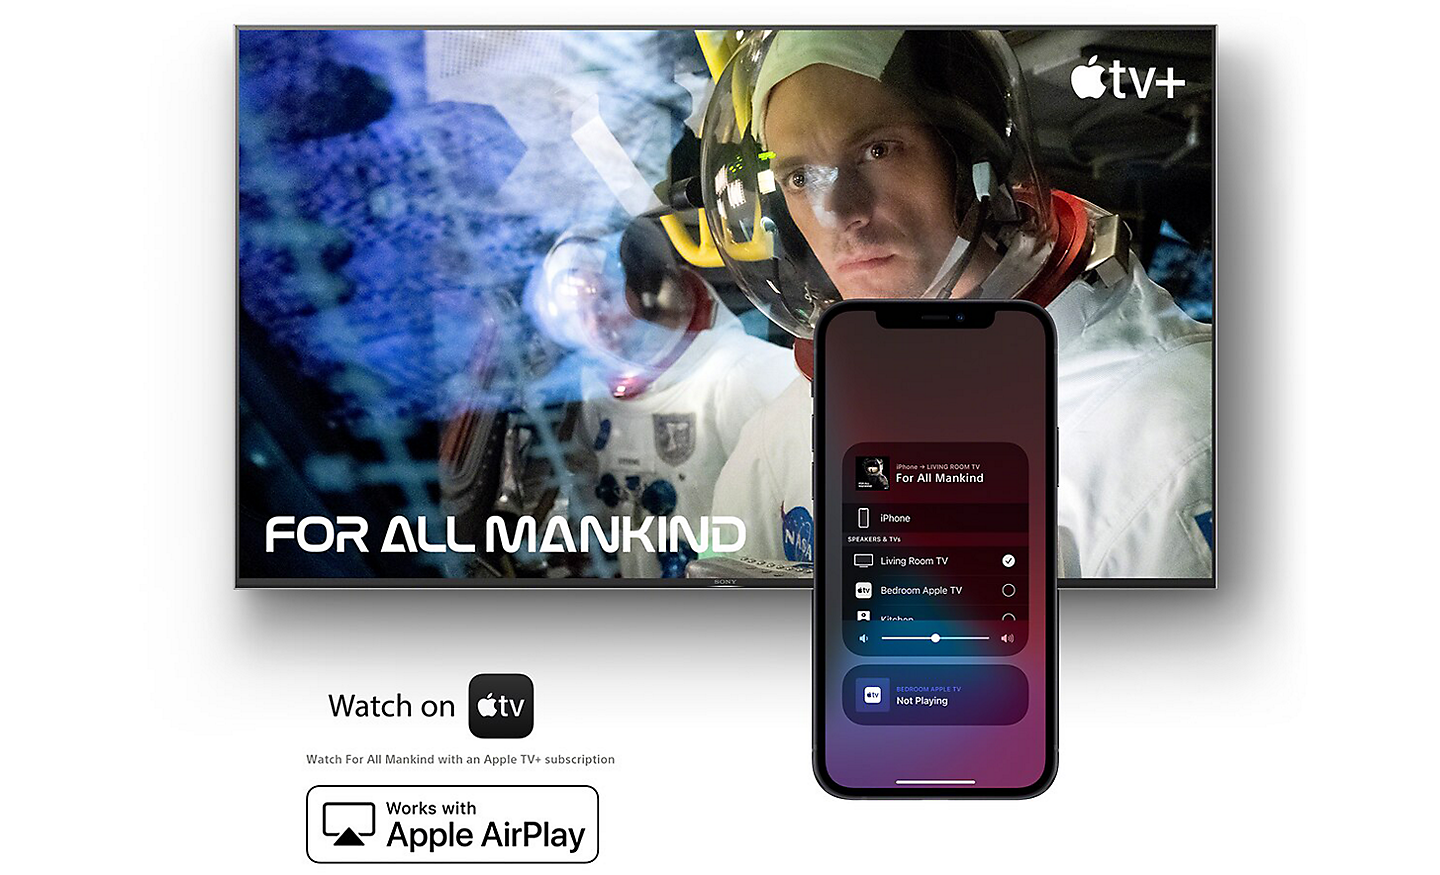 شاشة تعرض For All Mankind على تلفزيون Apple مع هاتف ذكي في الجهة الأمامية، وشعارَي Watch on Apple TV وWorks with Apple AirPlay أدناه